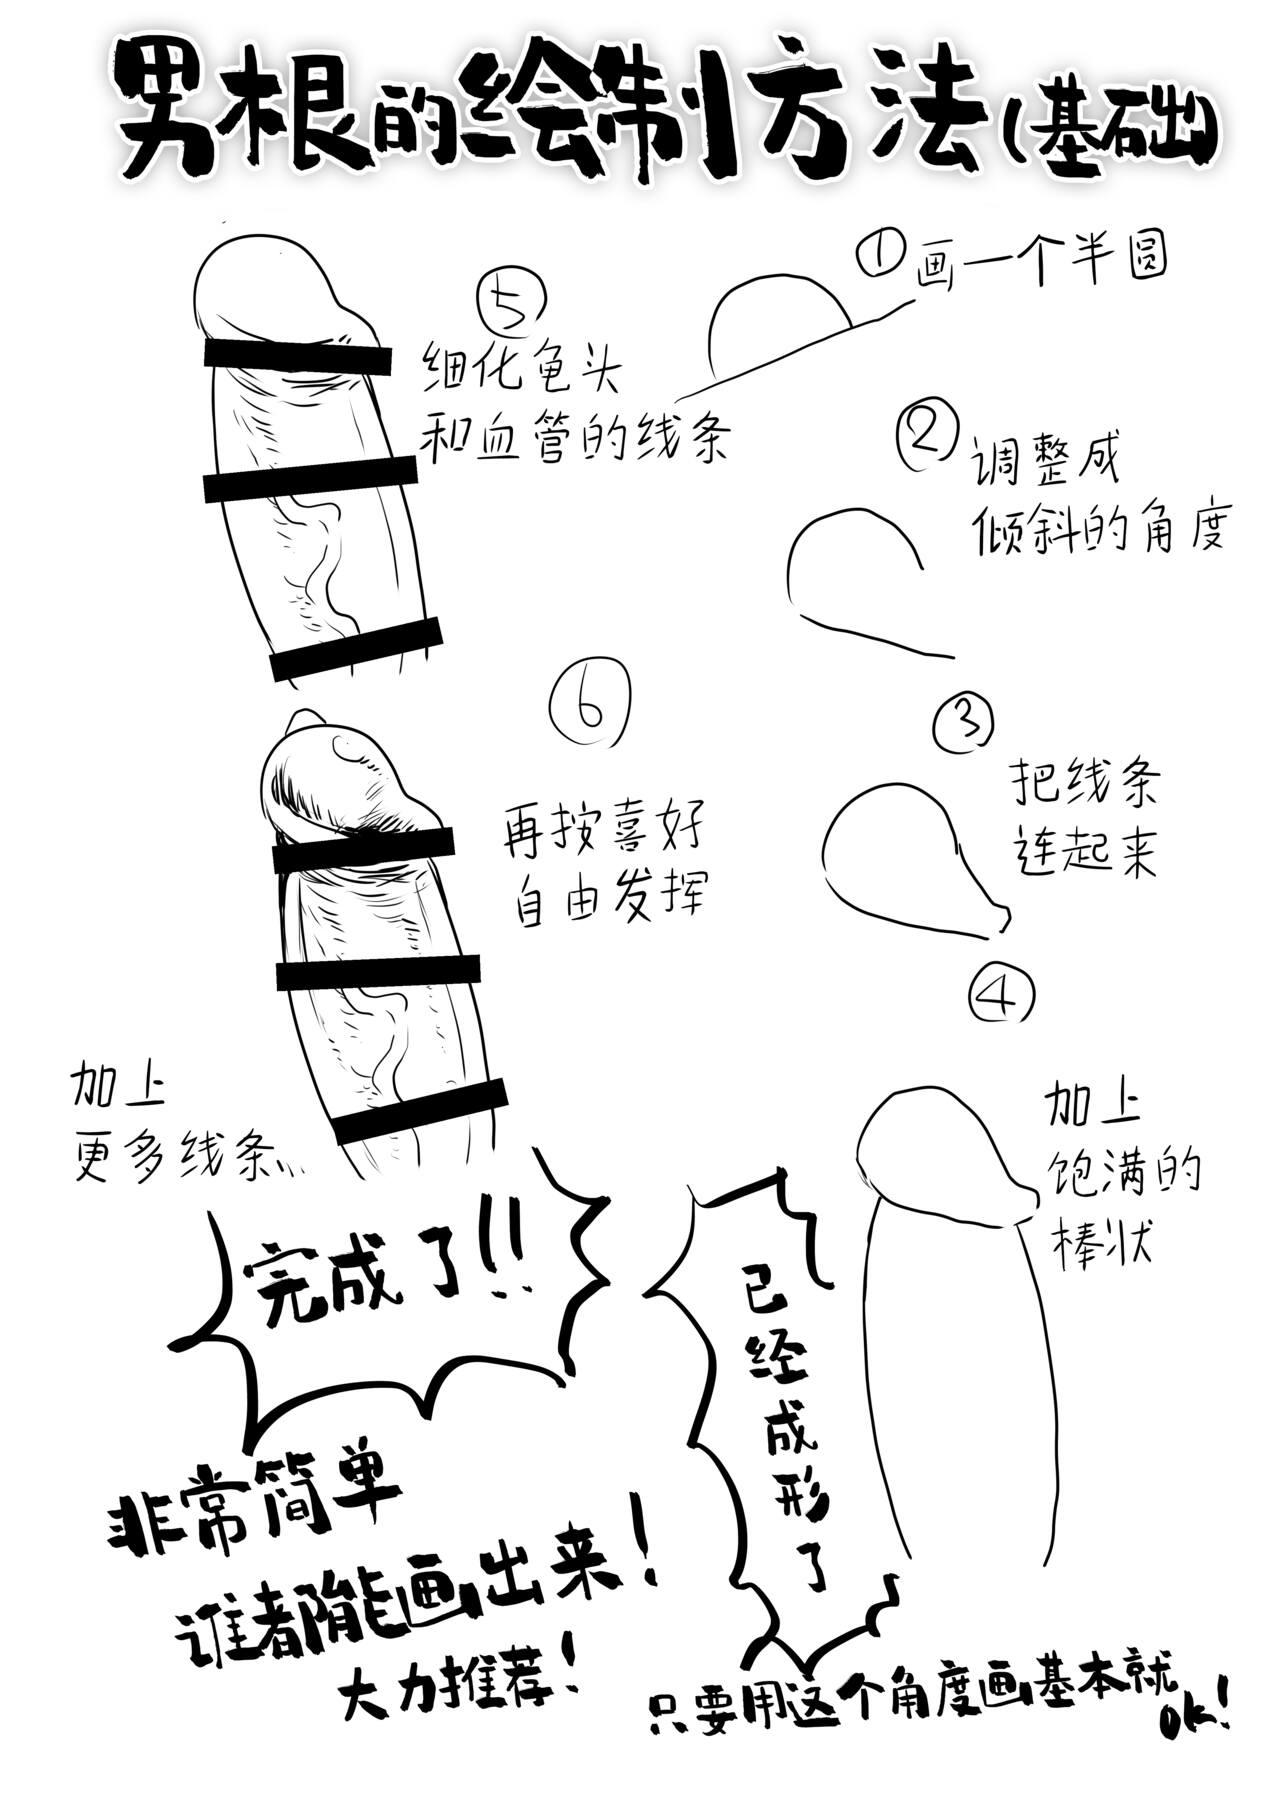 Boyfriend Chinpo no Egakikata to Keshi no Irekata | 男根的绘制方法与打码的方法 - Original Class - Page 3